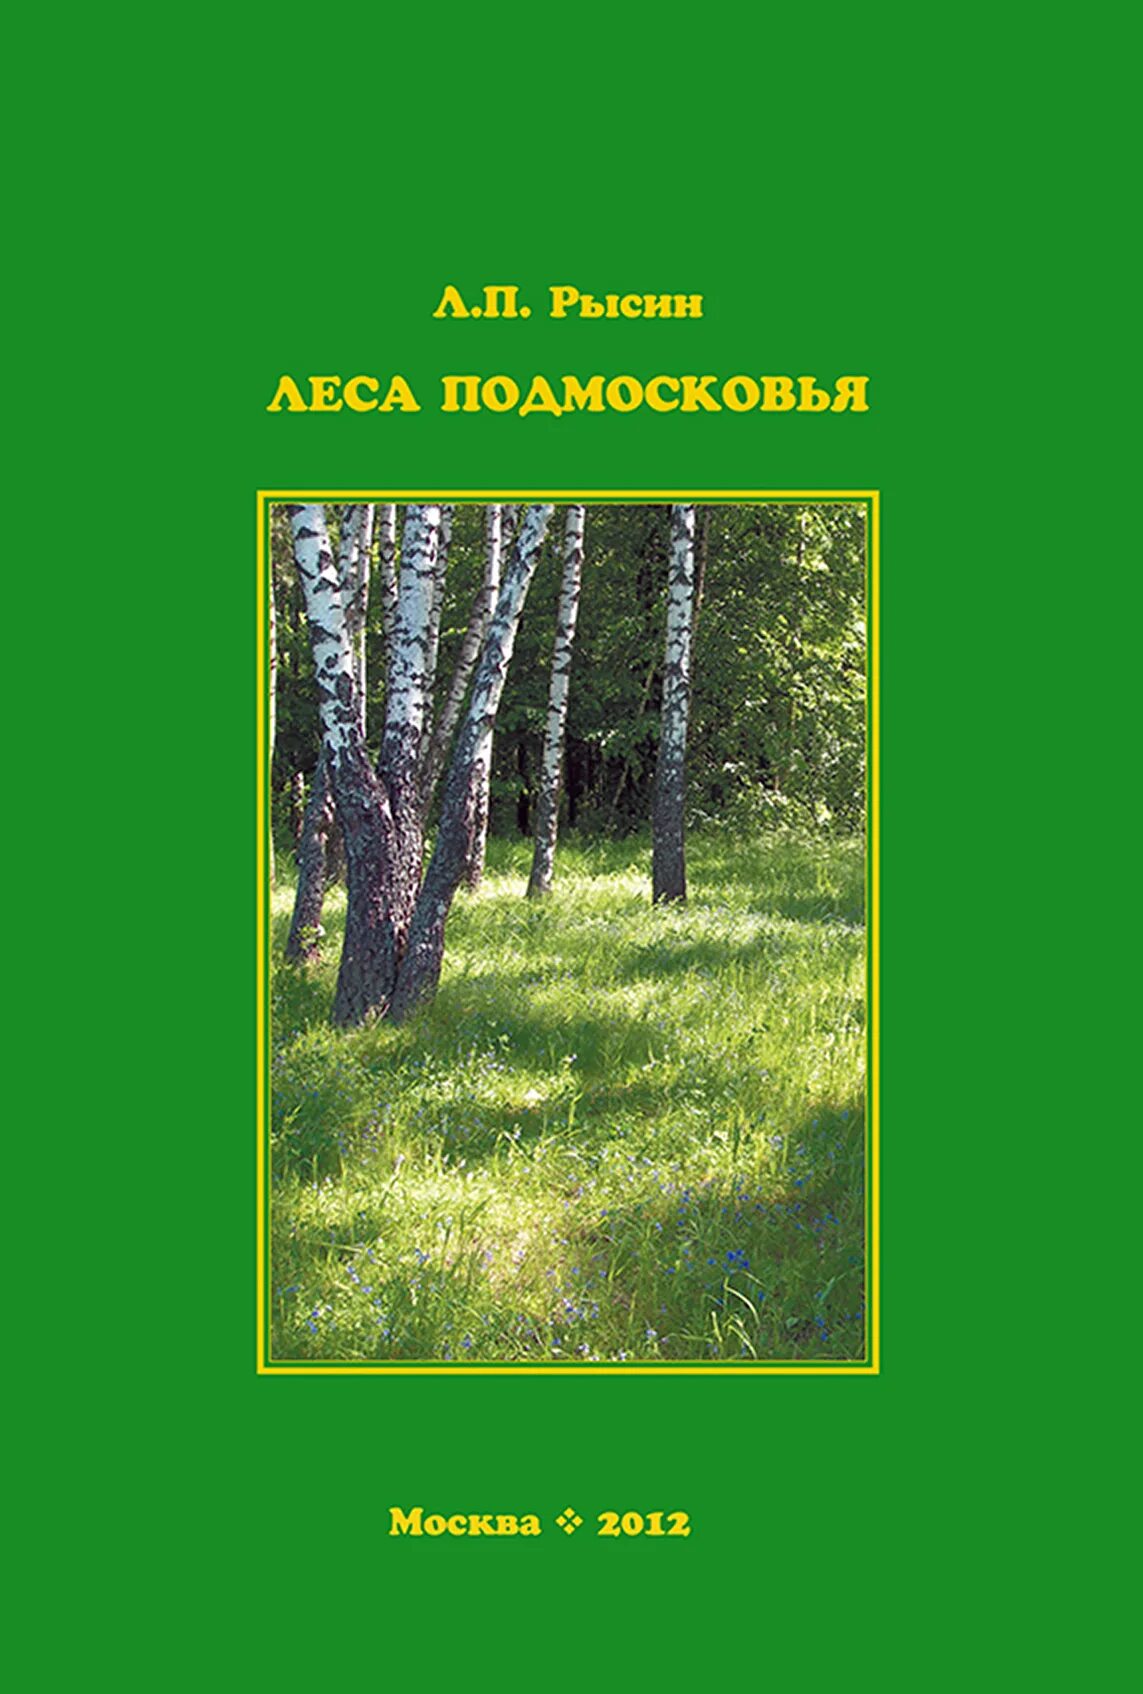 Книга в лесу. Книга леса. Книги о лесах России. Книга леса России.